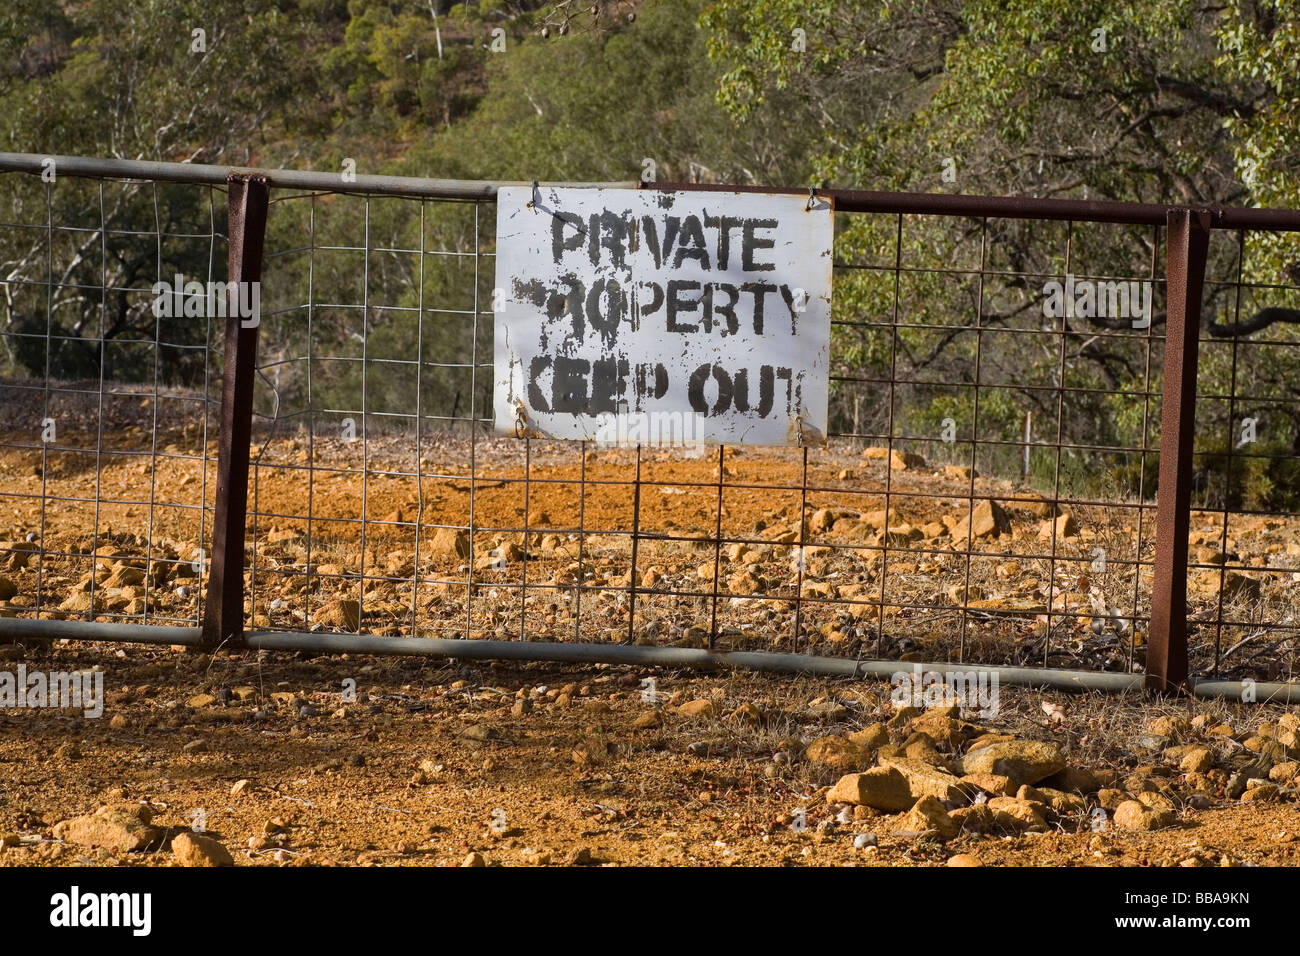 Desgastado viejo Manténgase fuera de propiedad privada signo en el campo australiano Foto de stock